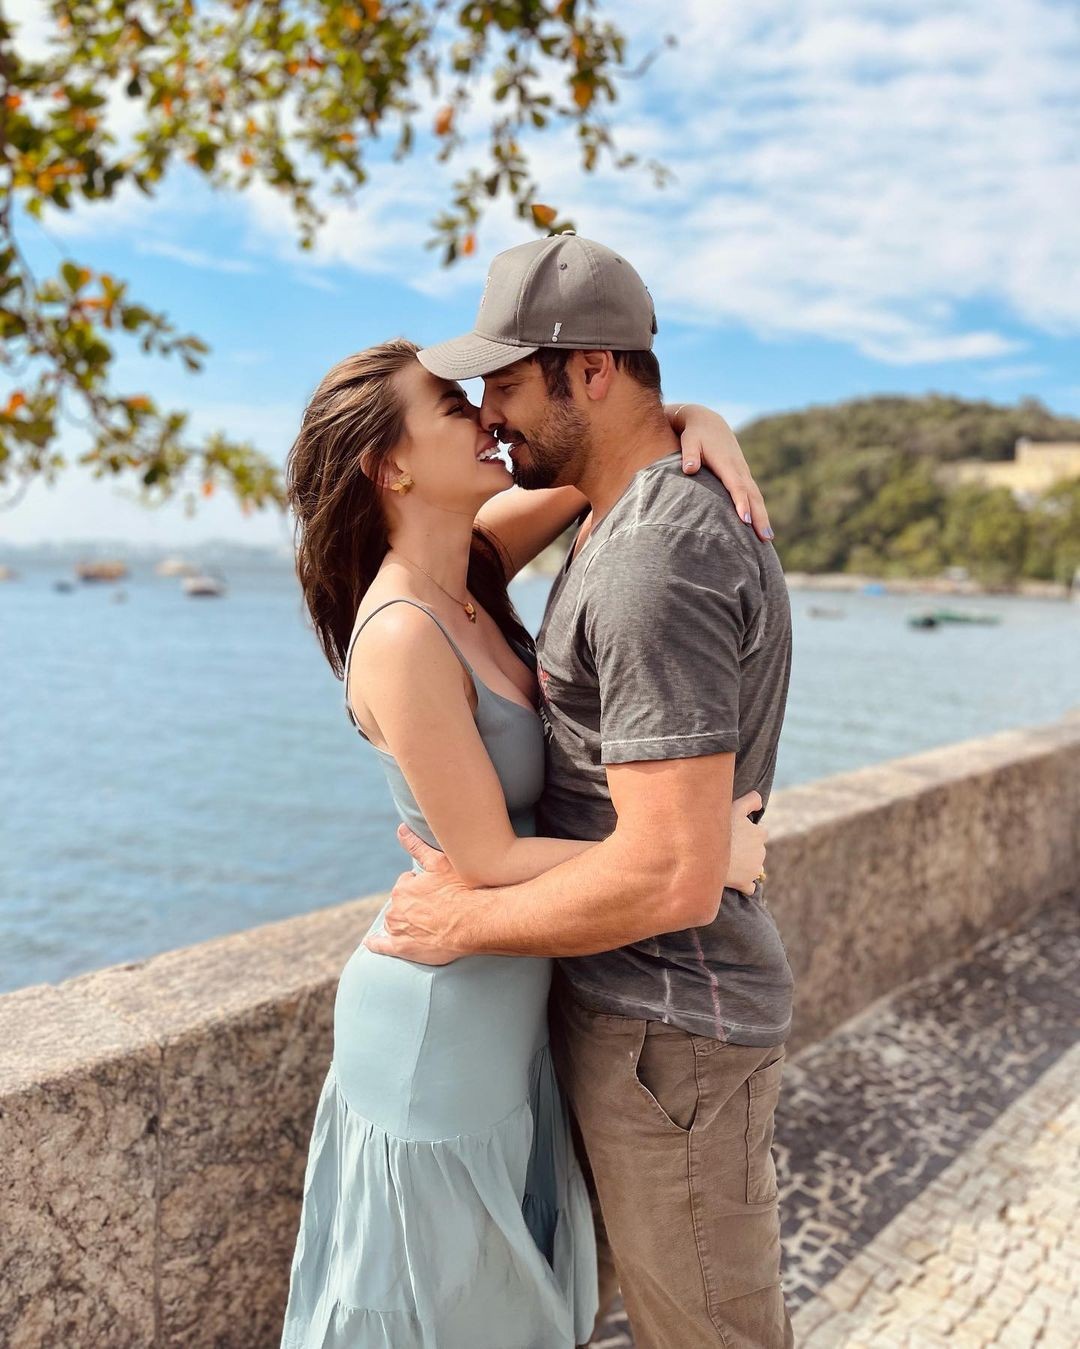 Victor Pecoraro fala sobre relacionamento com Rayanne Morais no Instagram (Foto: Reprodução / Instagram)